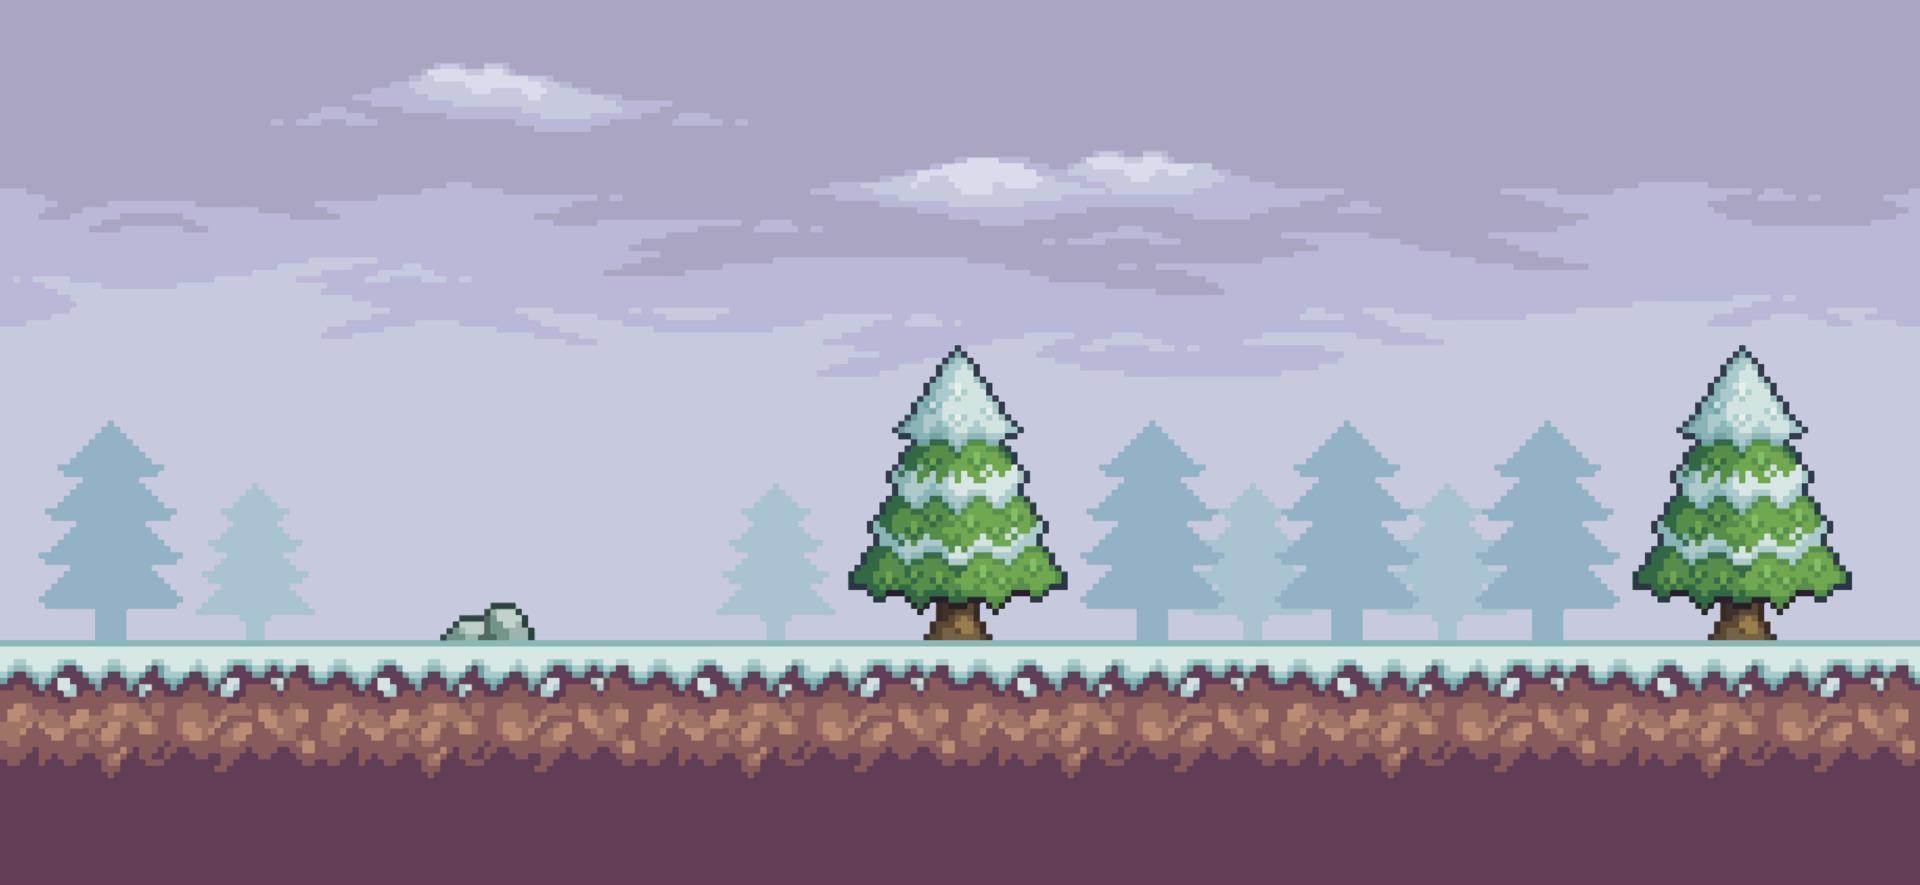 Pixelkunst-Spielszene im Schnee mit Kiefern, Wolken und Stein 8-Bit-Hintergrund vektor